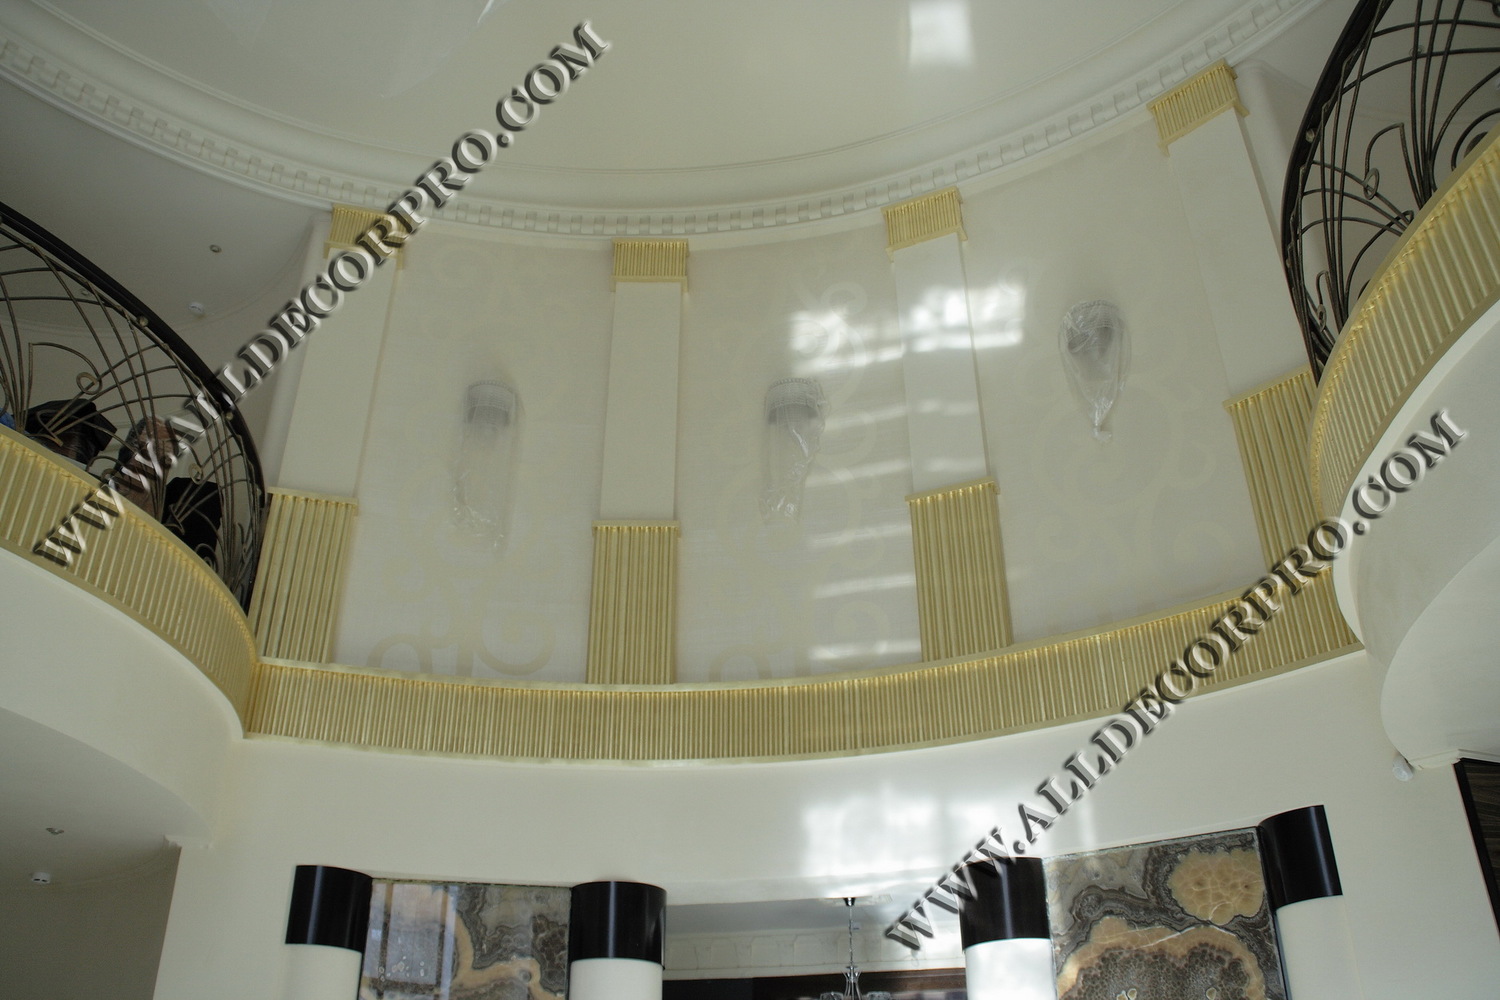 Стены декорированные венецианской штукатуркой имитирующей ткань